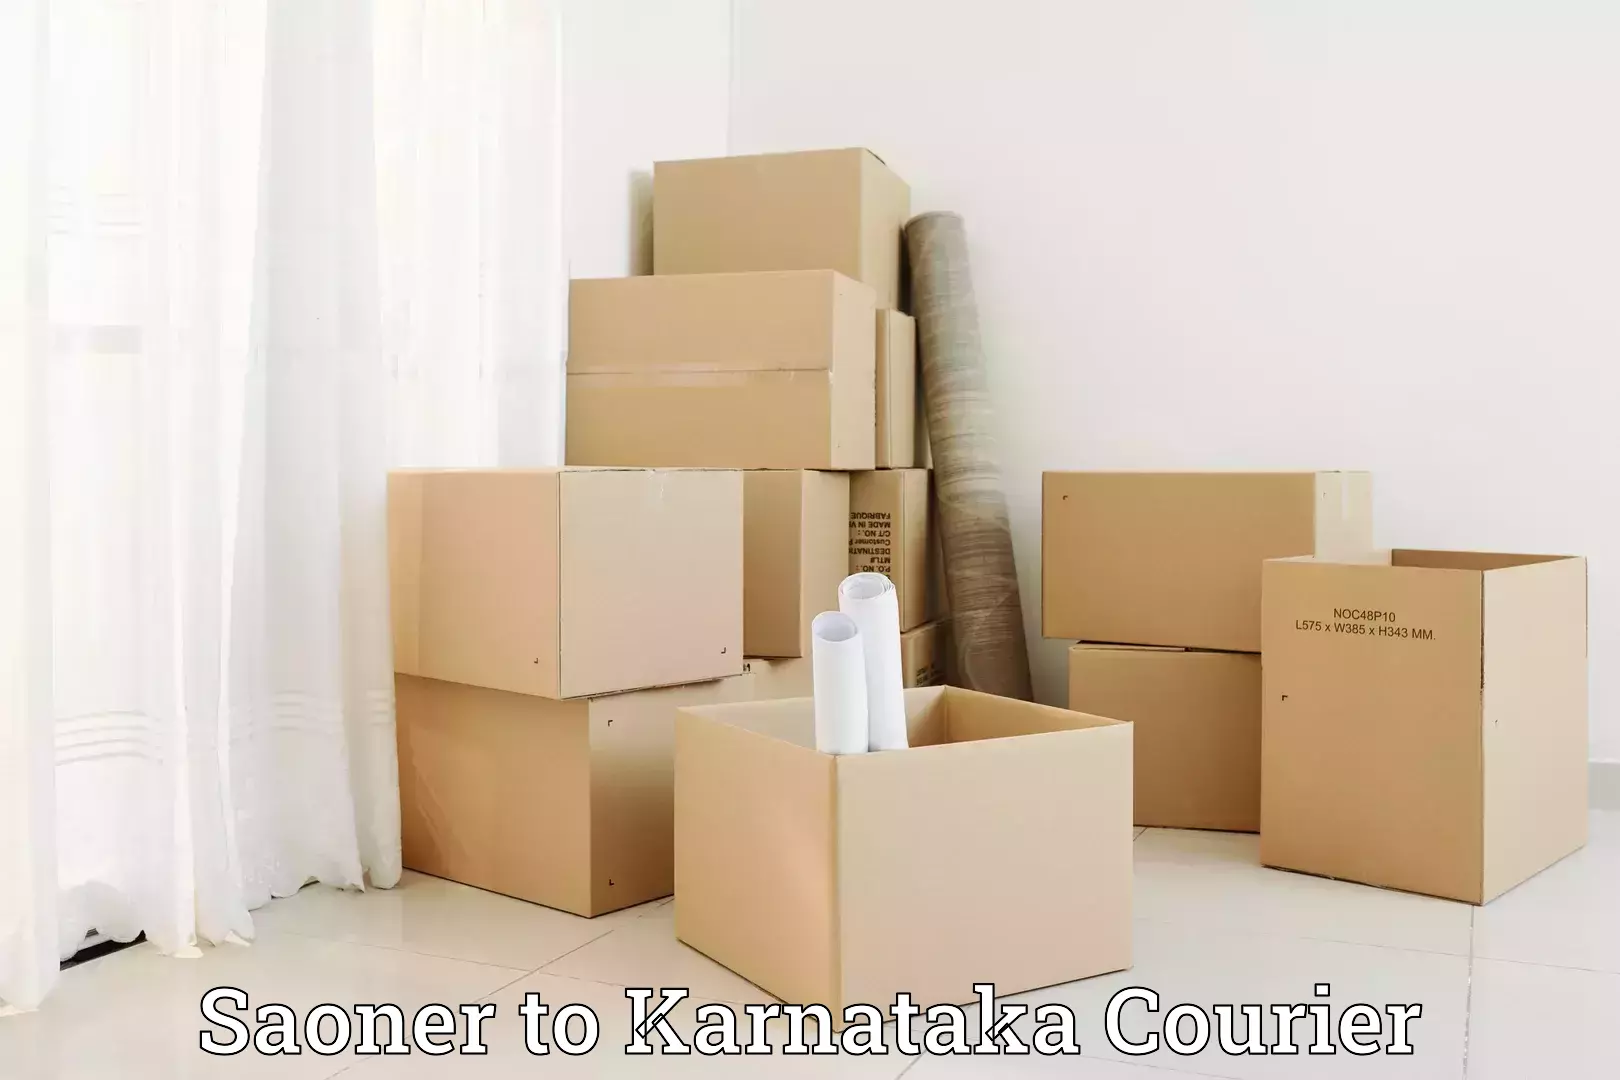 Luggage shipping planner Saoner to Karnataka